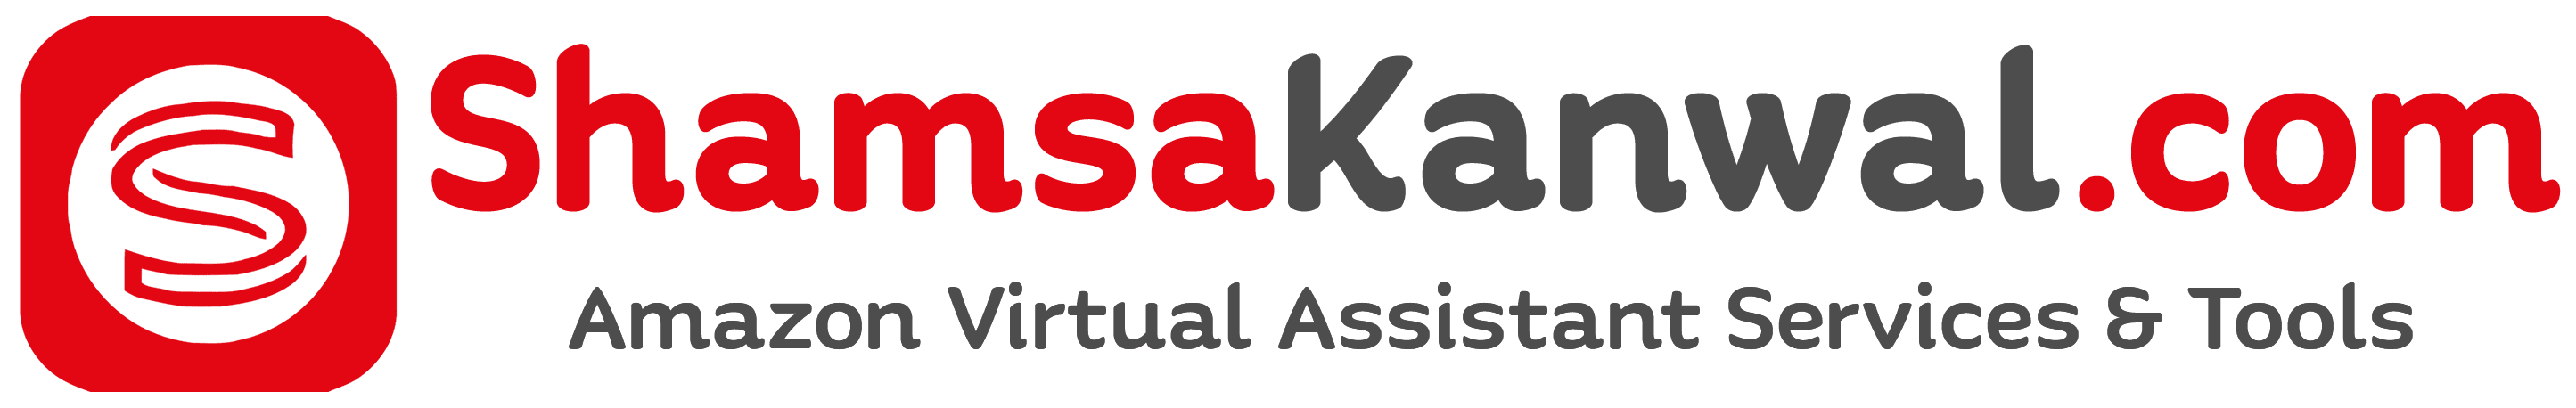 Shamsa Kanwal Amazon Virtual Assistant Services and Tools